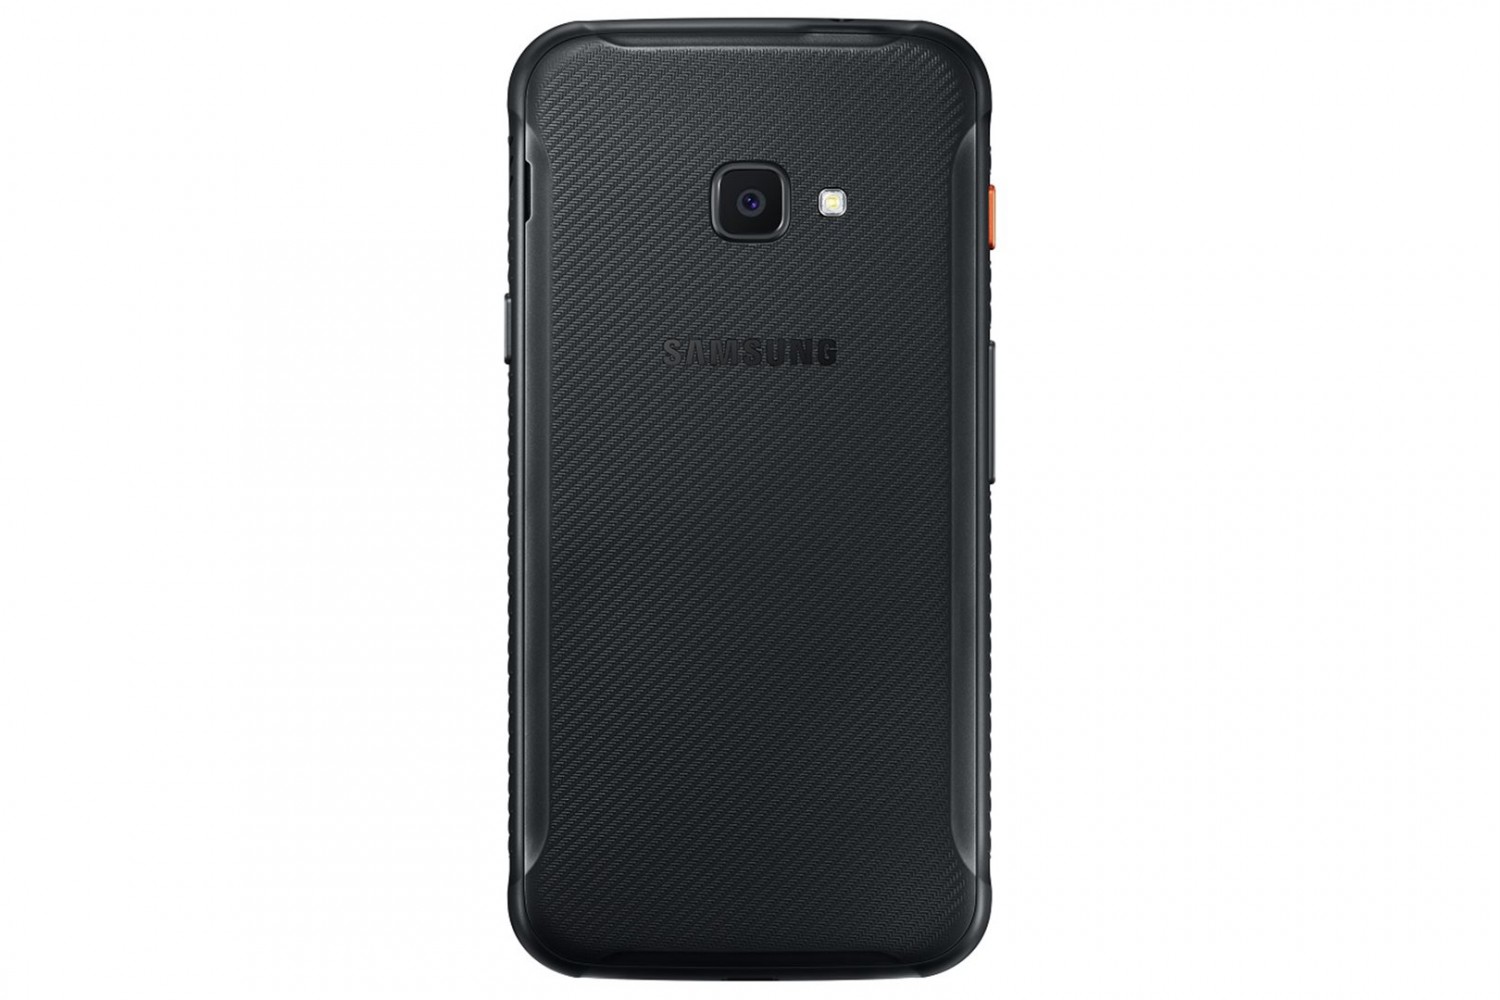 Samsung Galaxy Xcover 4S SM-G398F 3GB/32GB černá